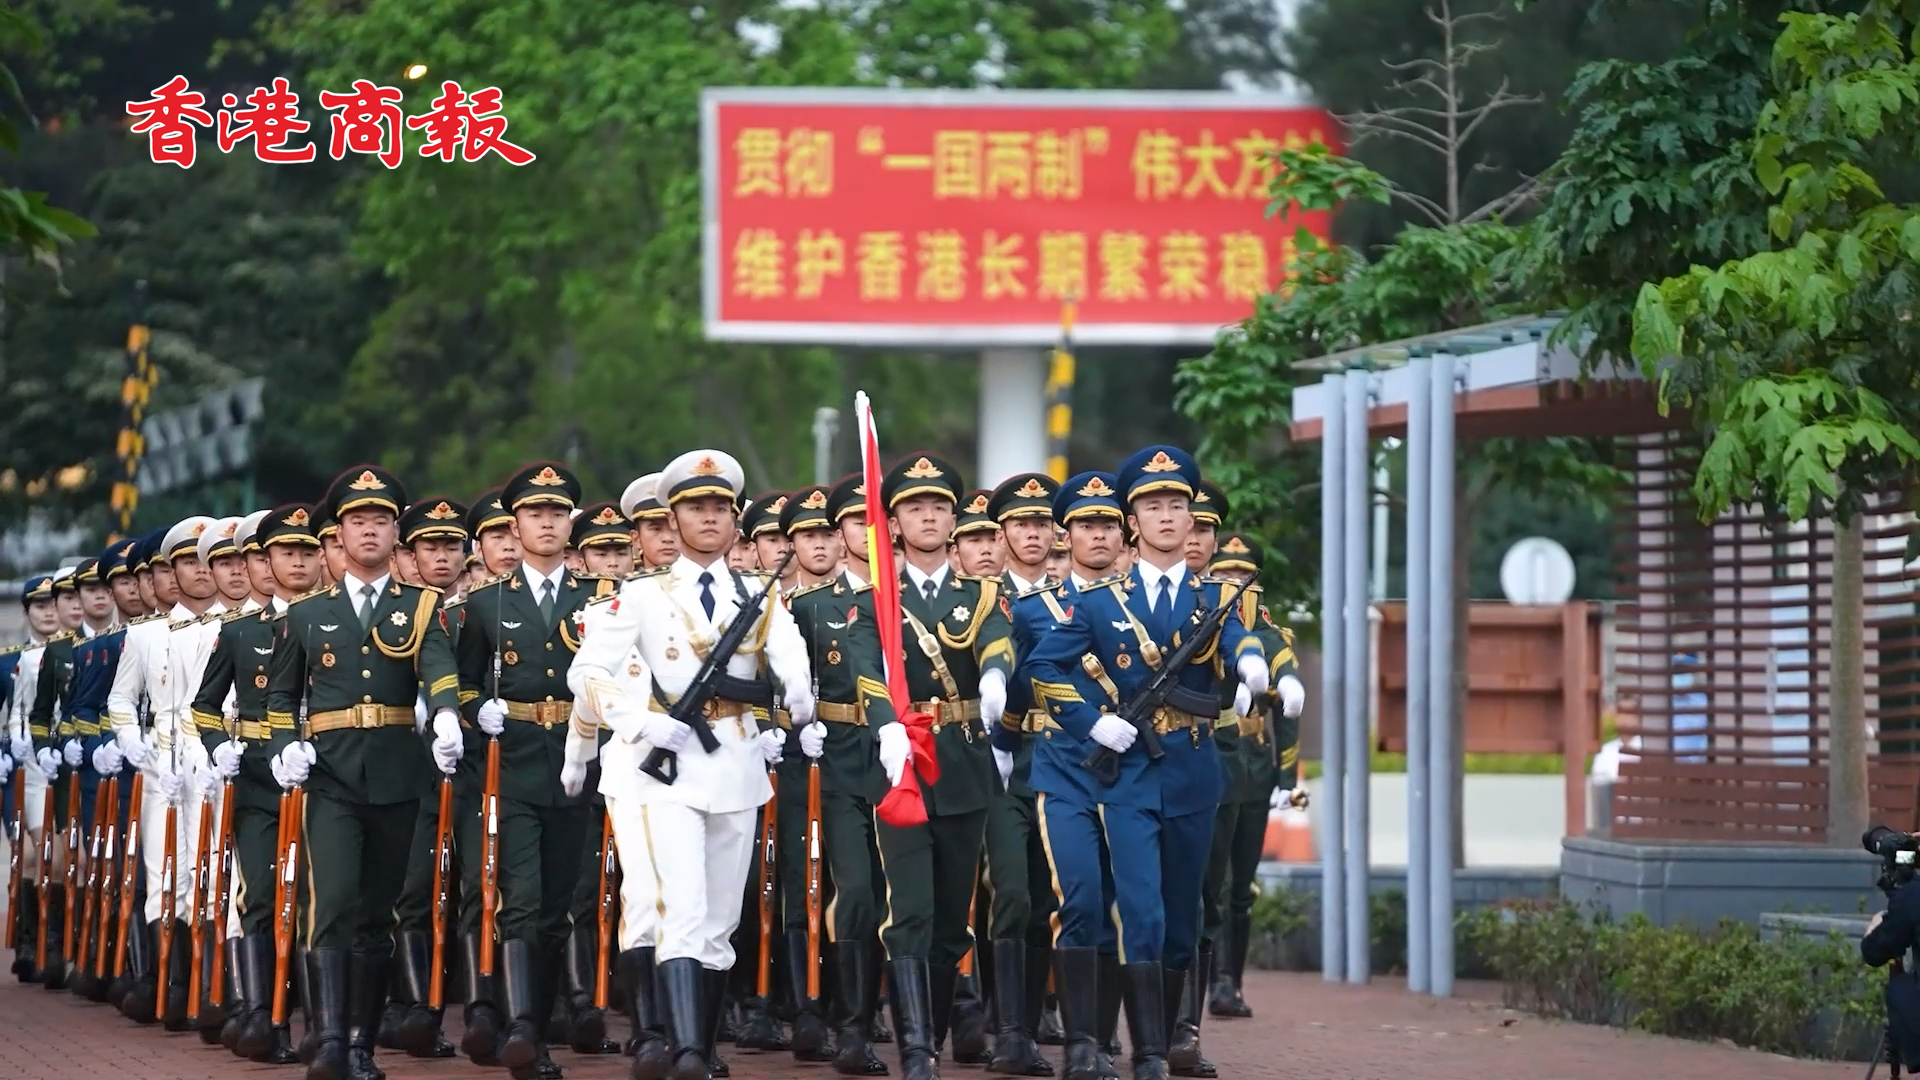 有片丨駐香港部隊組織「五一」升國旗儀式 首次邀來隊親屬和官兵同參加